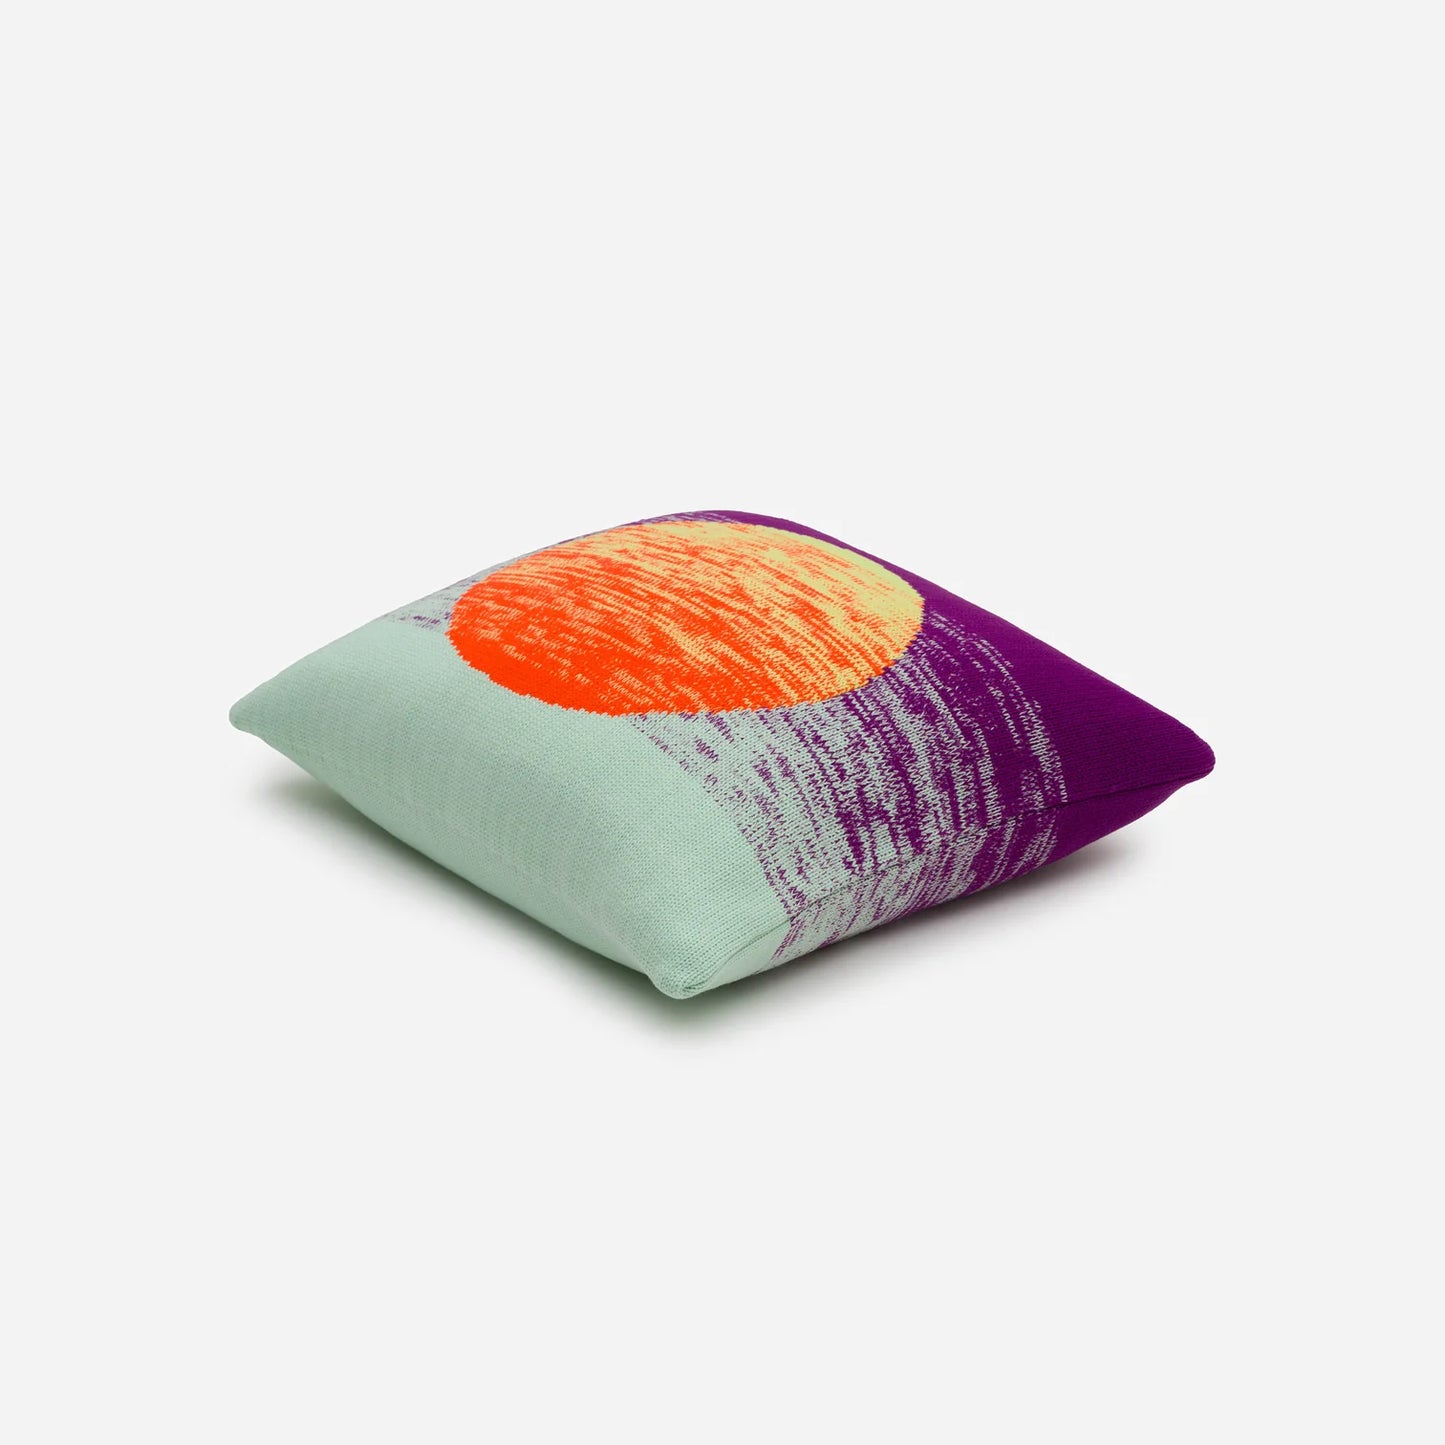 Violet Poppy Sunrise Sunset Pillow Cover